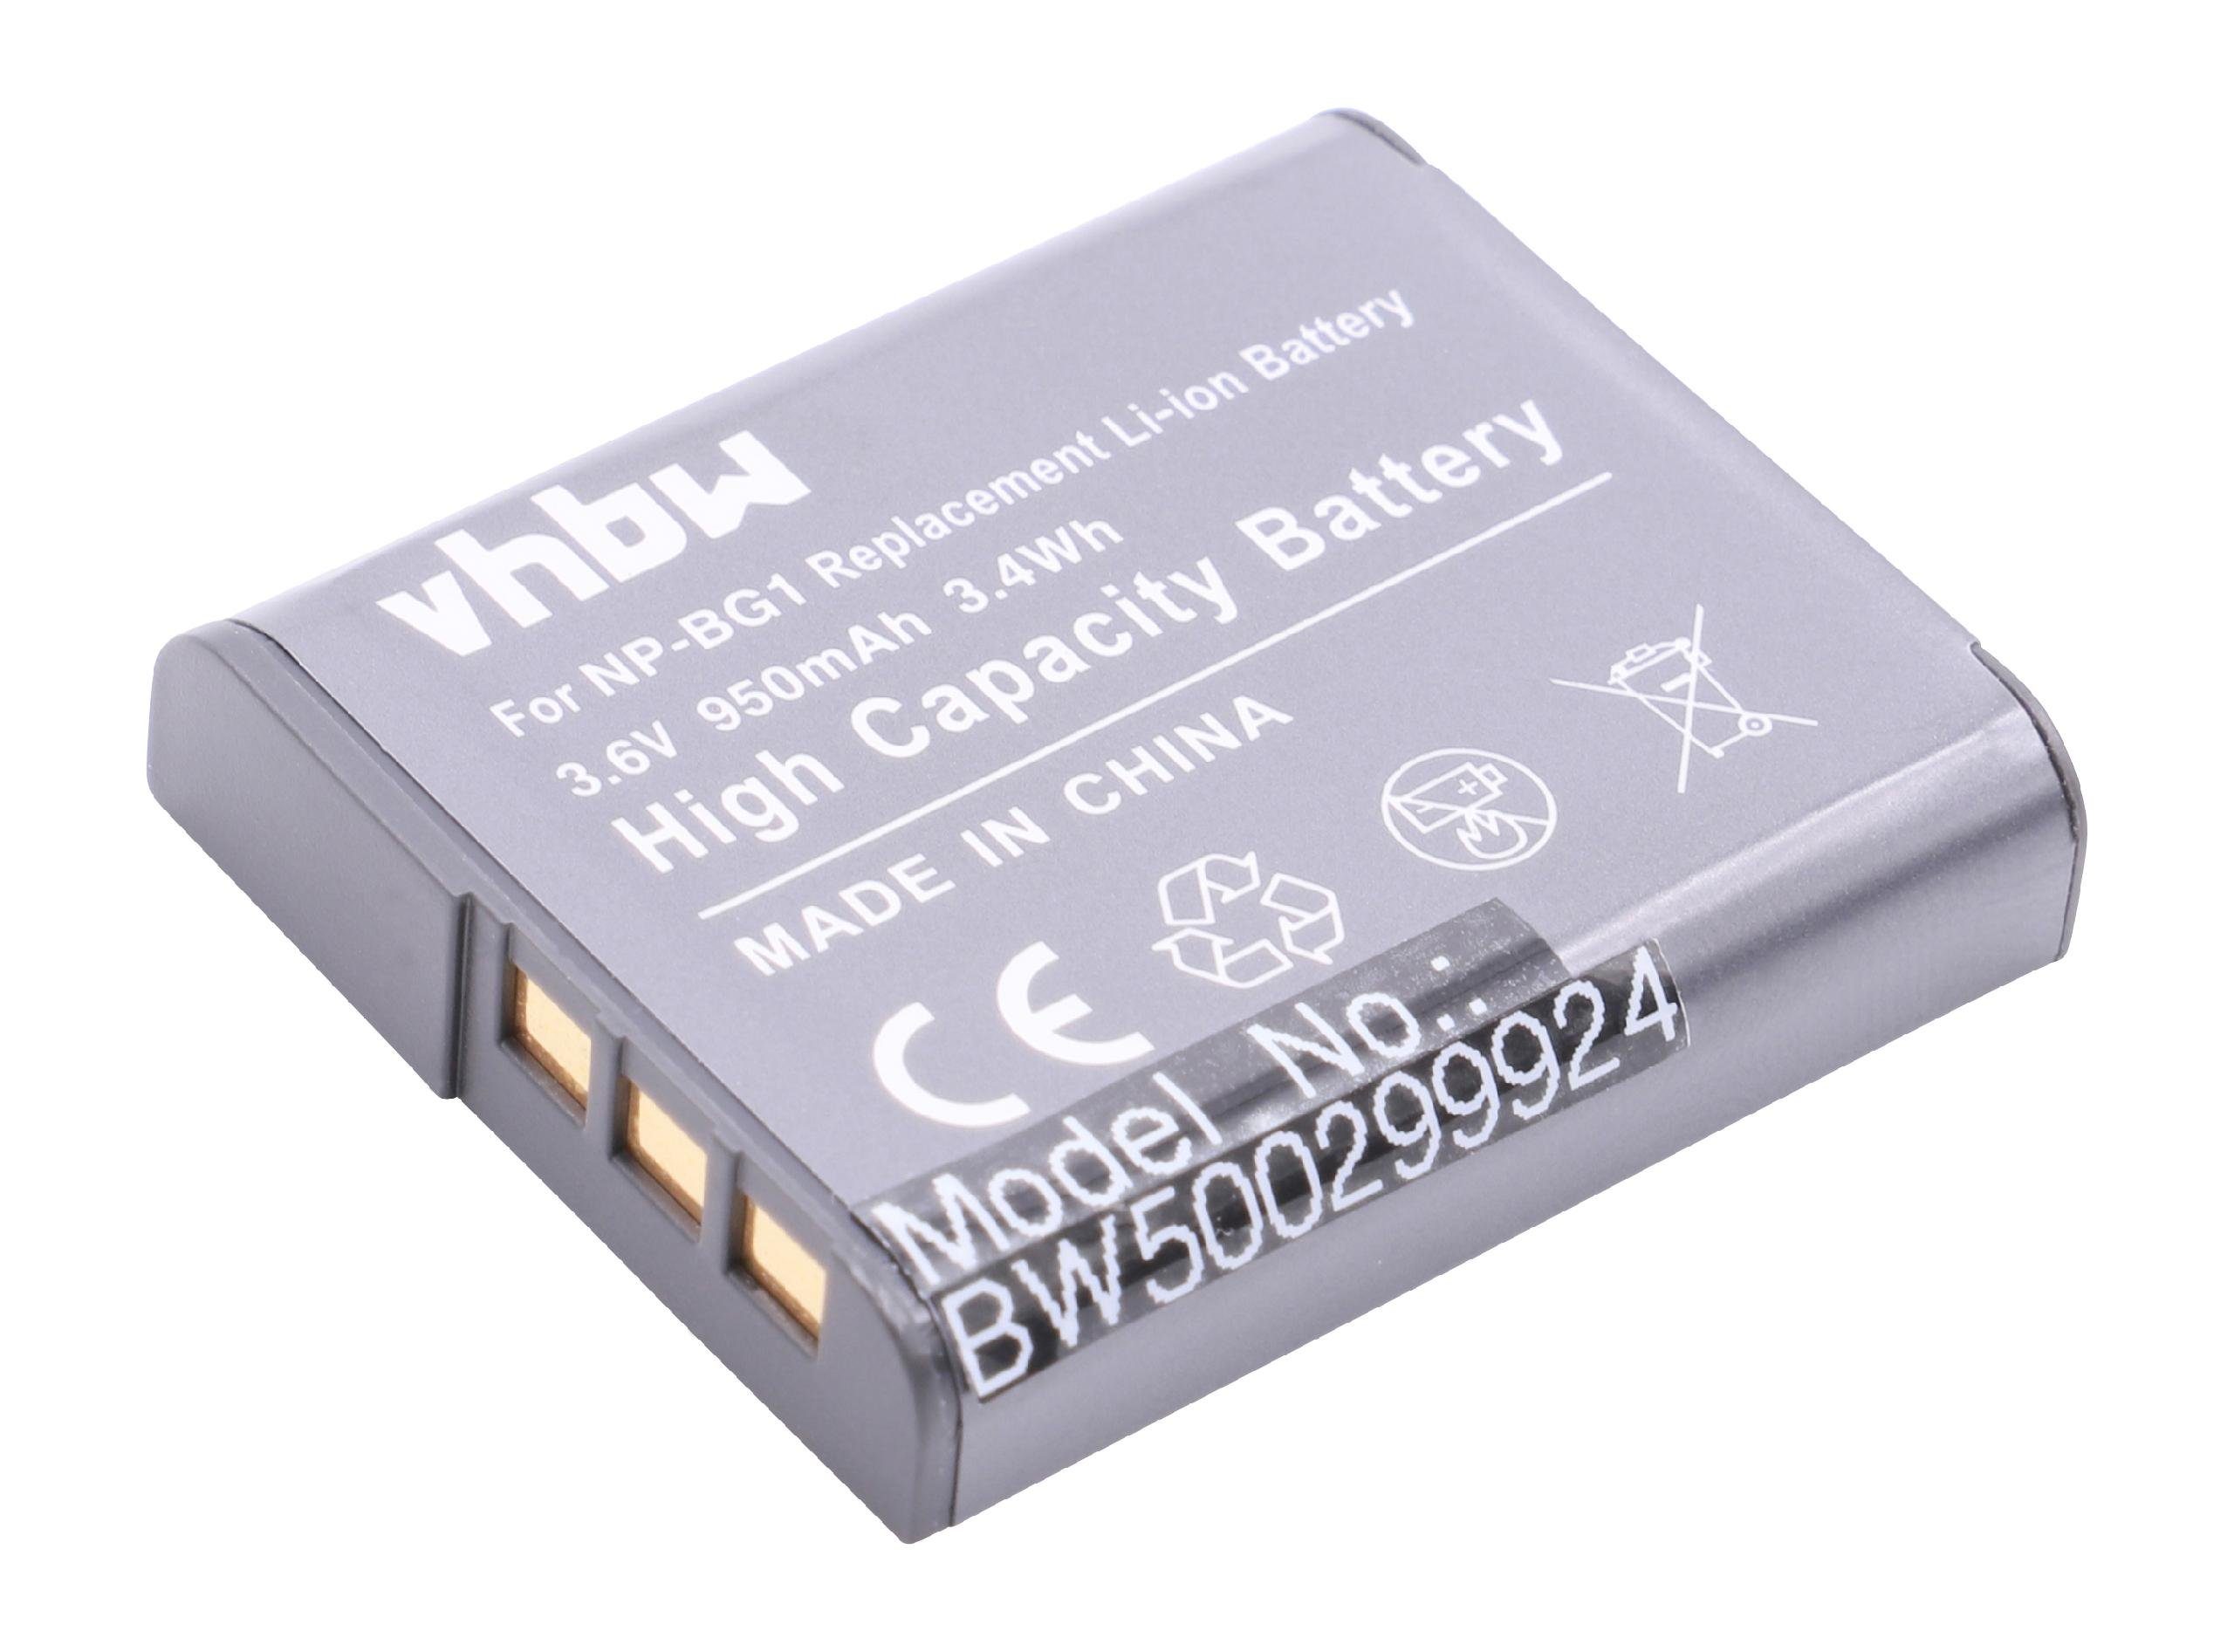 vhbw Kamera-Akku passend für Kompatibel mit Sony Cybershot DSC-W215, DSC-W220, DSC-W230, DSC-W270, DSC-W275, DSC-W290 Kamera / Foto Kompakt (950mAh, 3,6V, Li-Ion) 950 mAh